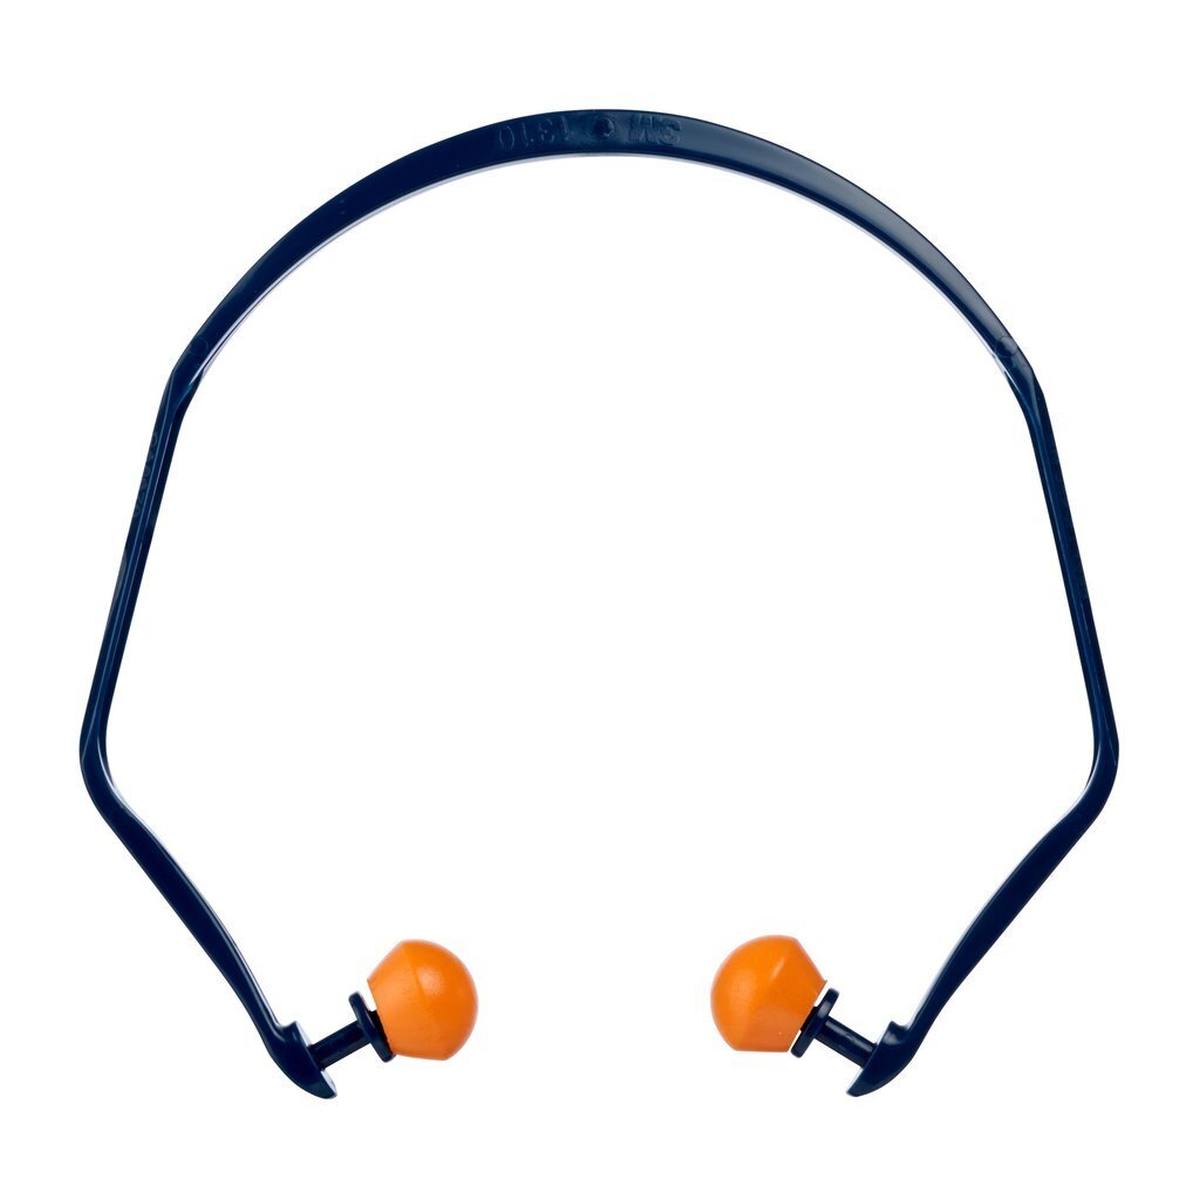 3M 1310 gehoorbescherming, bijzonder comfortabel dankzij elastisch oorstukje, SNR = 26 dB